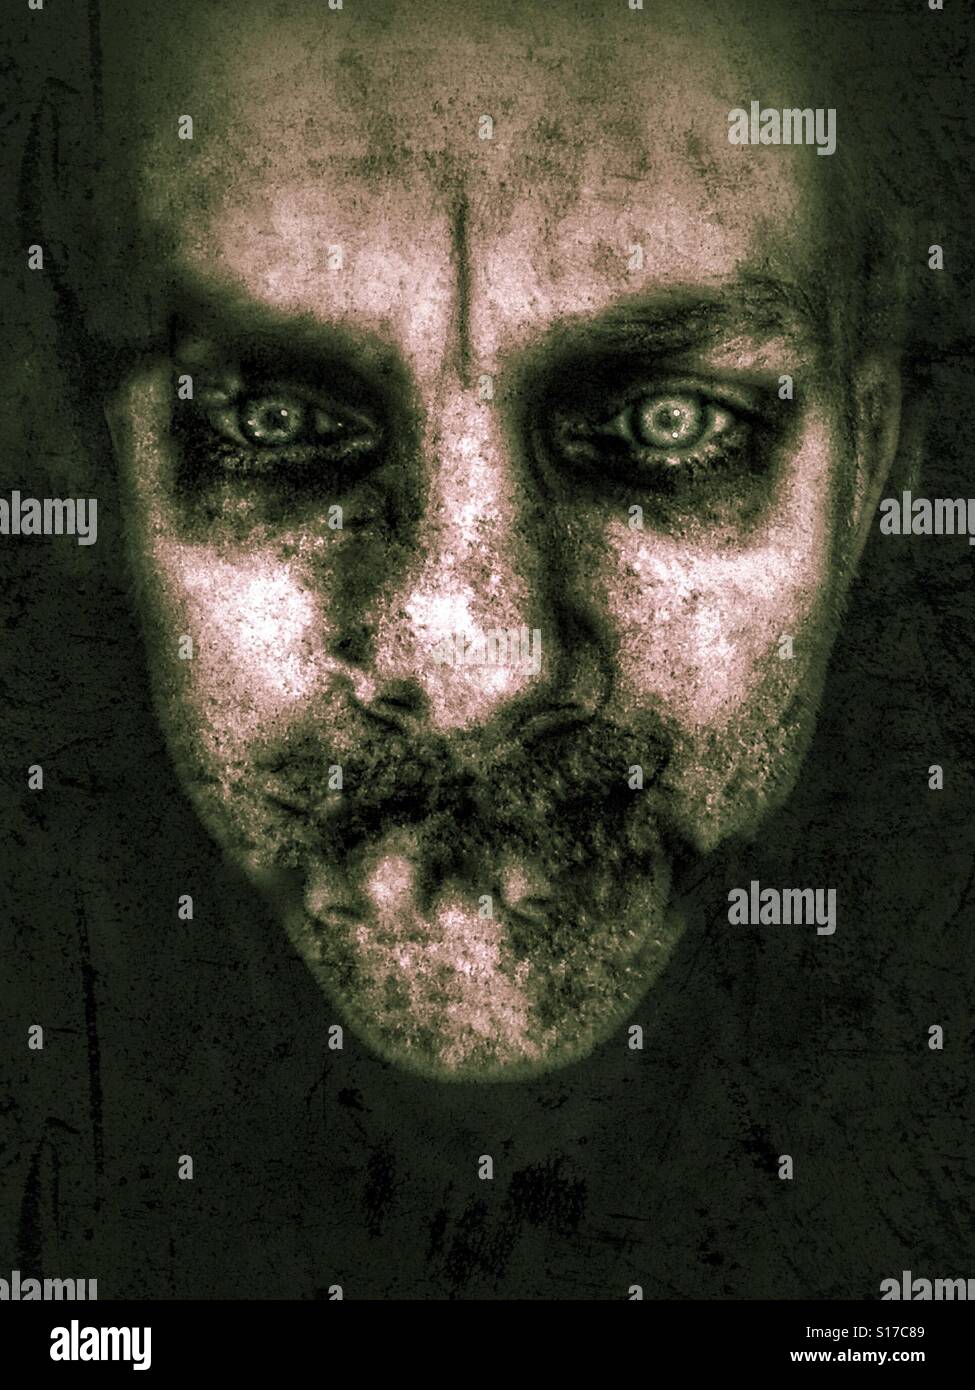 Kopfschuss von einem Zombie-wie Mann mit intensiven Augen und verwesenden Fleisch Wirkung. Stockfoto